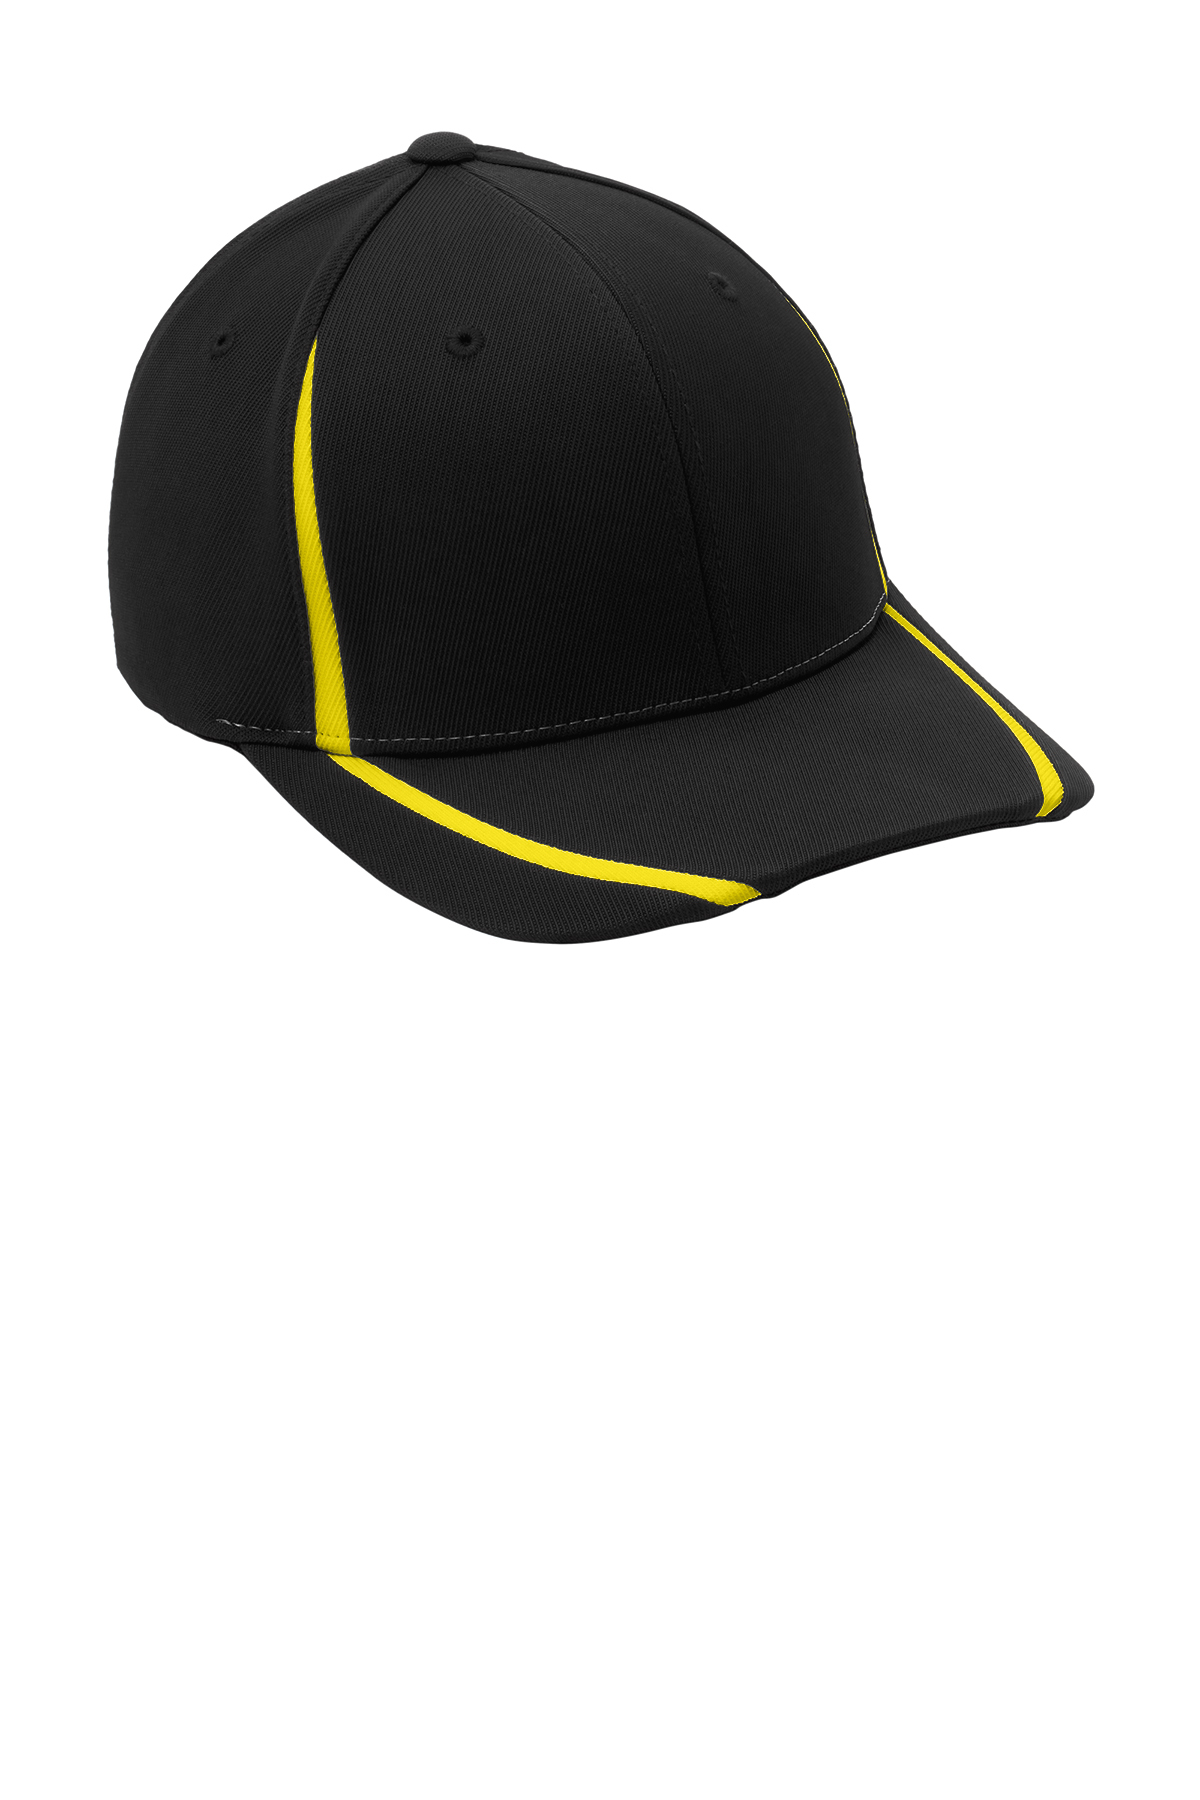 Sport-Tek Flexfit Performance Colorblock Cap | Product | SanMar